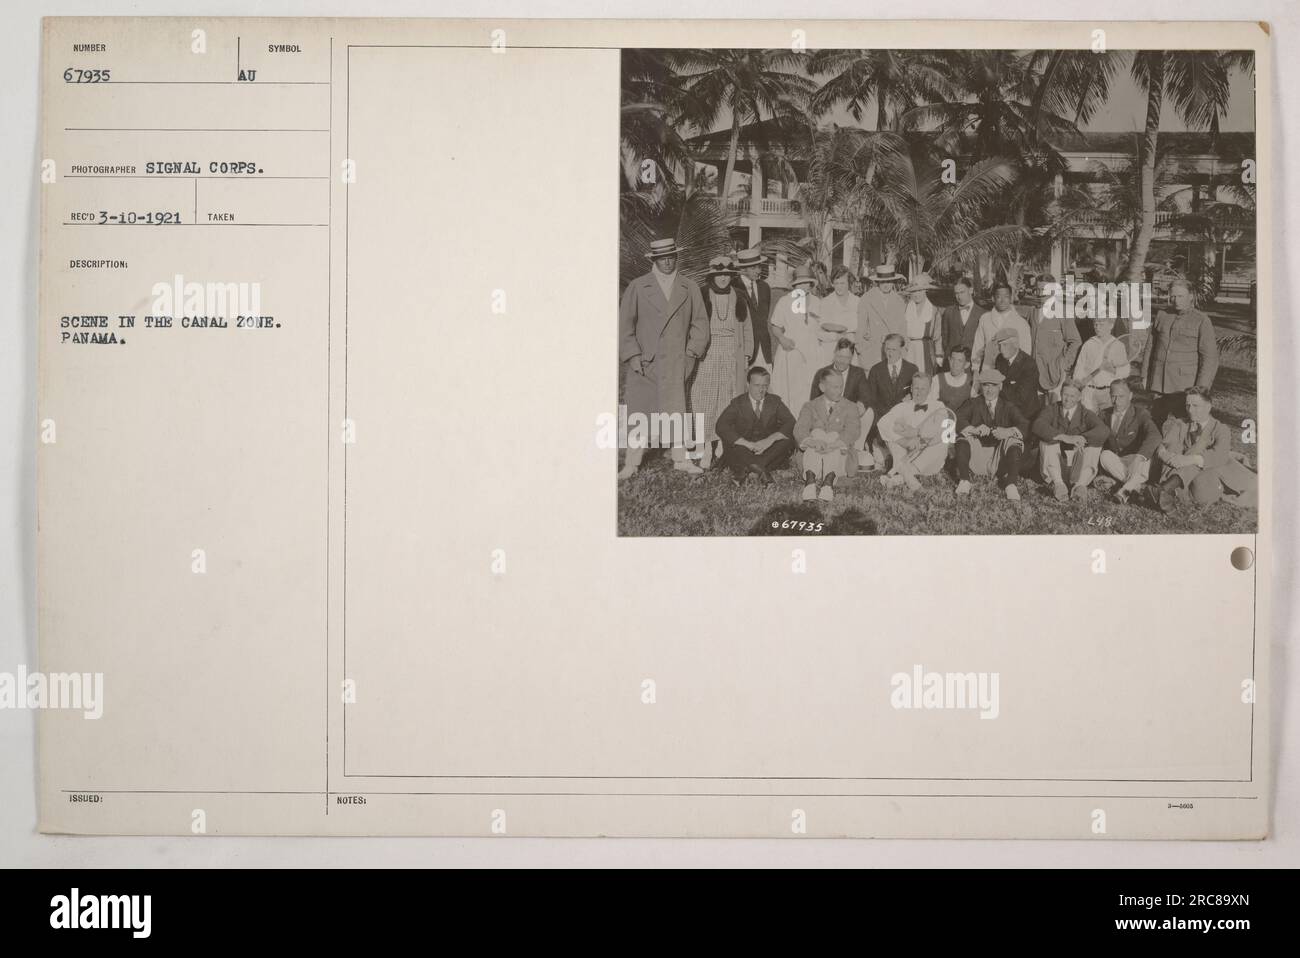 Amerikanische Militäraktivitäten in der Kanalzone Panama im Ersten Weltkrieg Dieses Foto wurde vom Signalkorps am 10. März 1921 aufgenommen und zeigt einen unbekannten Tatort in der Kanalzone. Das Foto ist mit der Nummer 67935 in den Akten des Fotografen gekennzeichnet. Stockfoto